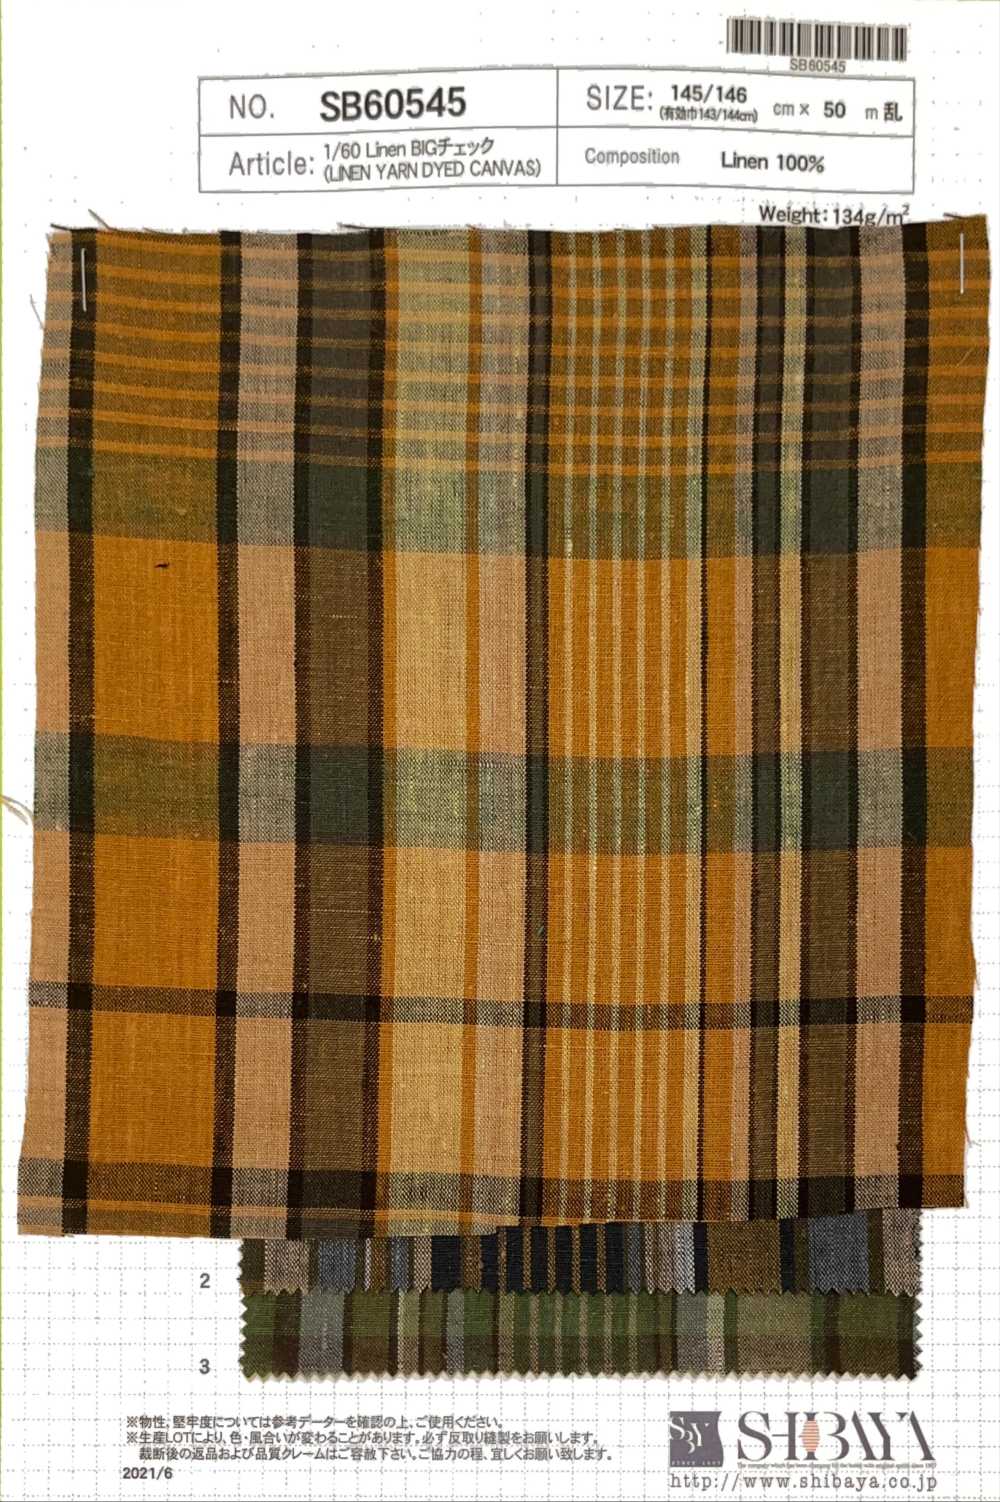 SB60545 1/60 Linen Big Check[Textile / Fabric] SHIBAYA